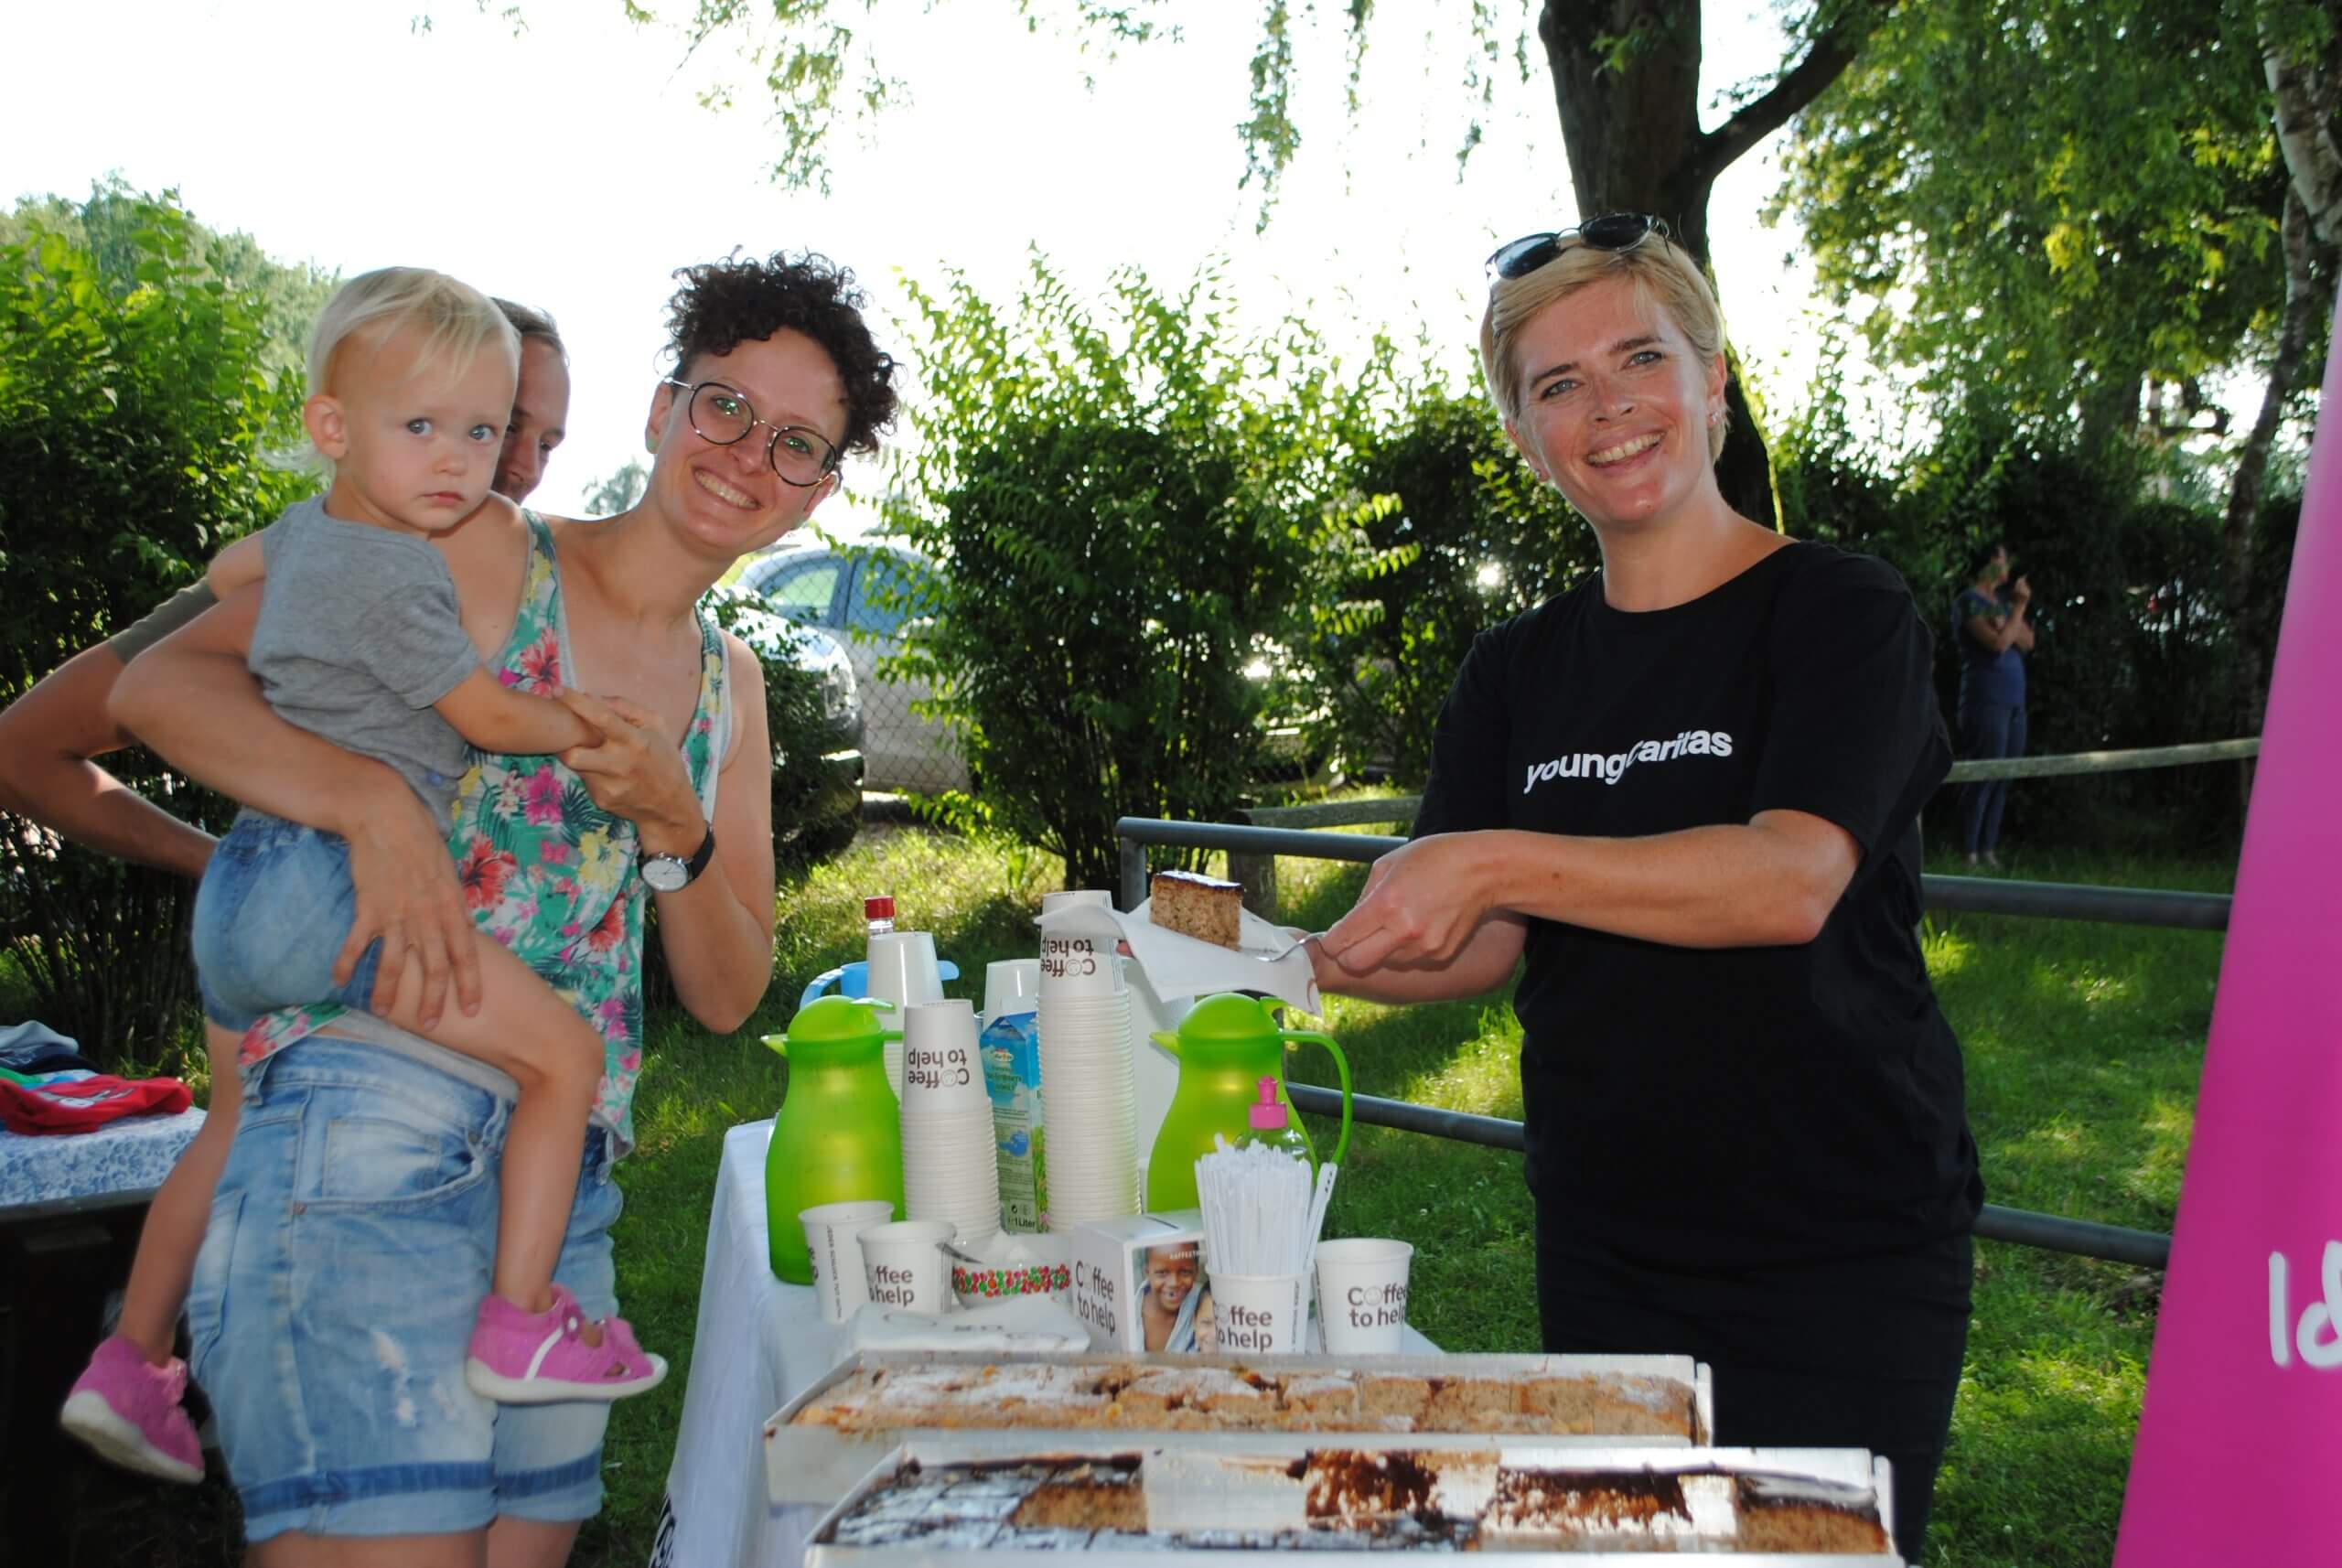 Karin Kurowski, Leiterin der youngCaritas Oberösterreich, betreut den Coffee to help Stand bei der Aktion 